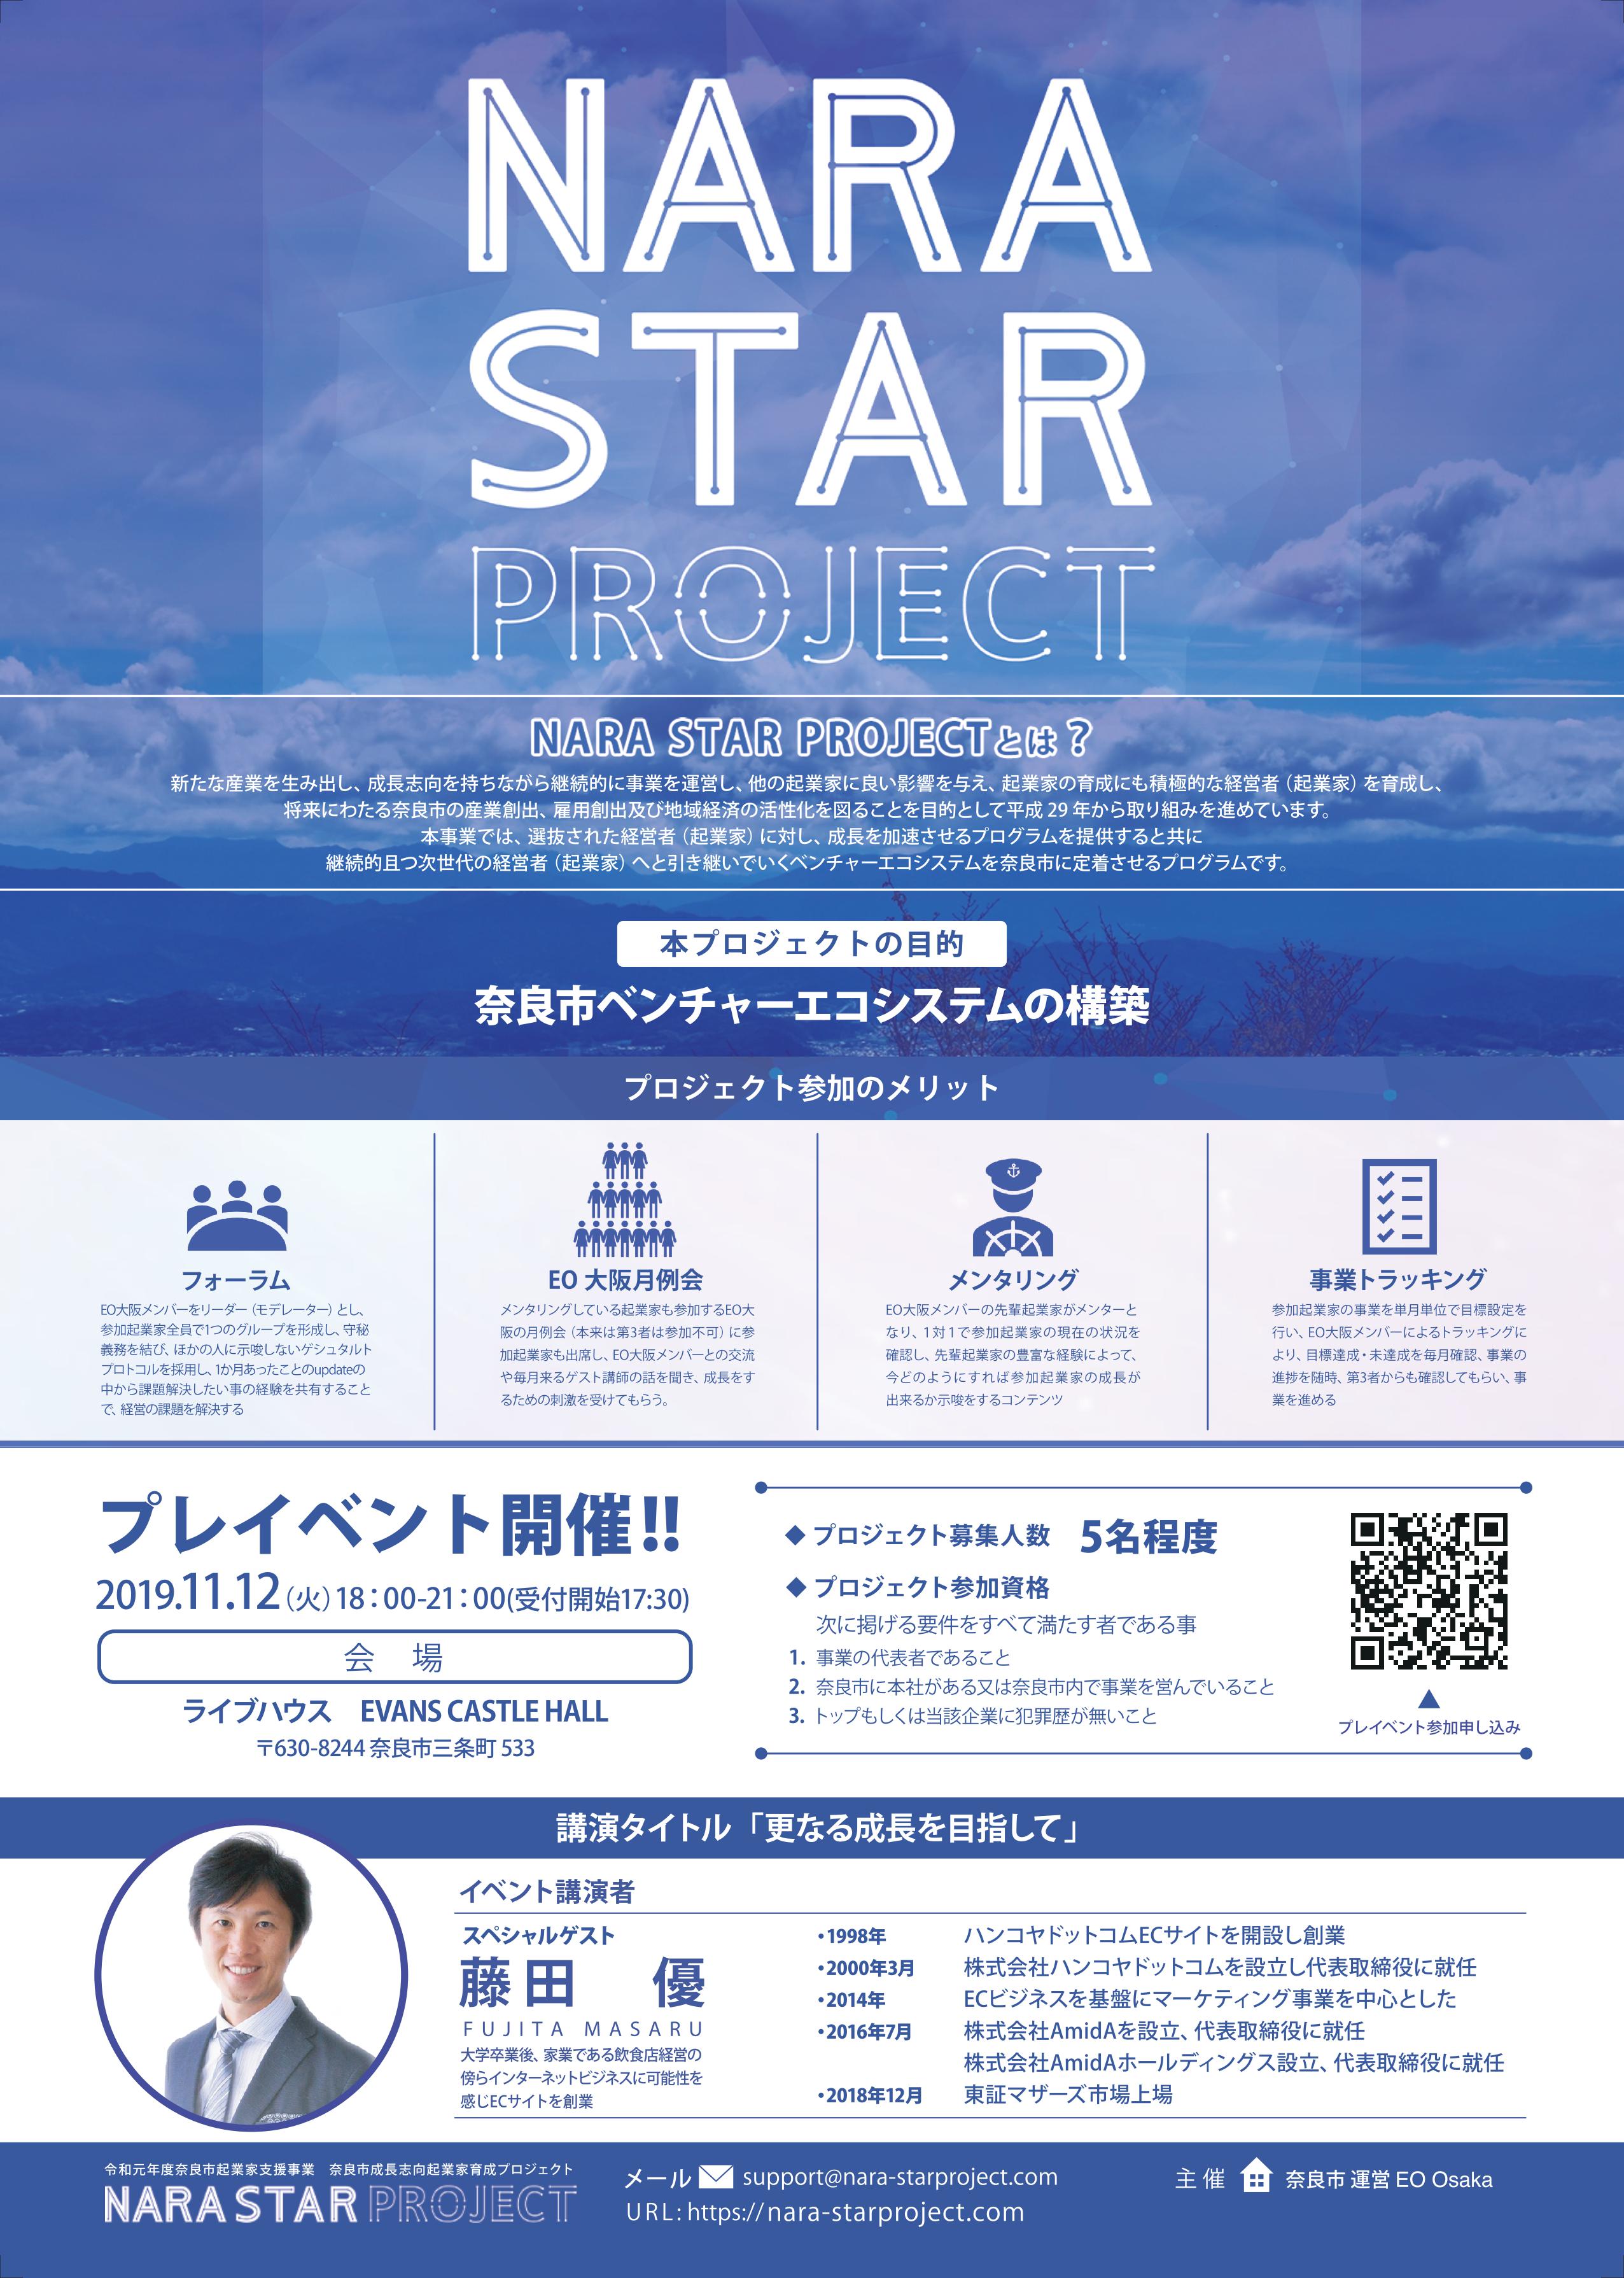 奈良市成長志向起業家育成プロジェクト「NARA STAR PROJECT」3期生募集(令和元年10月29日発表)の画像